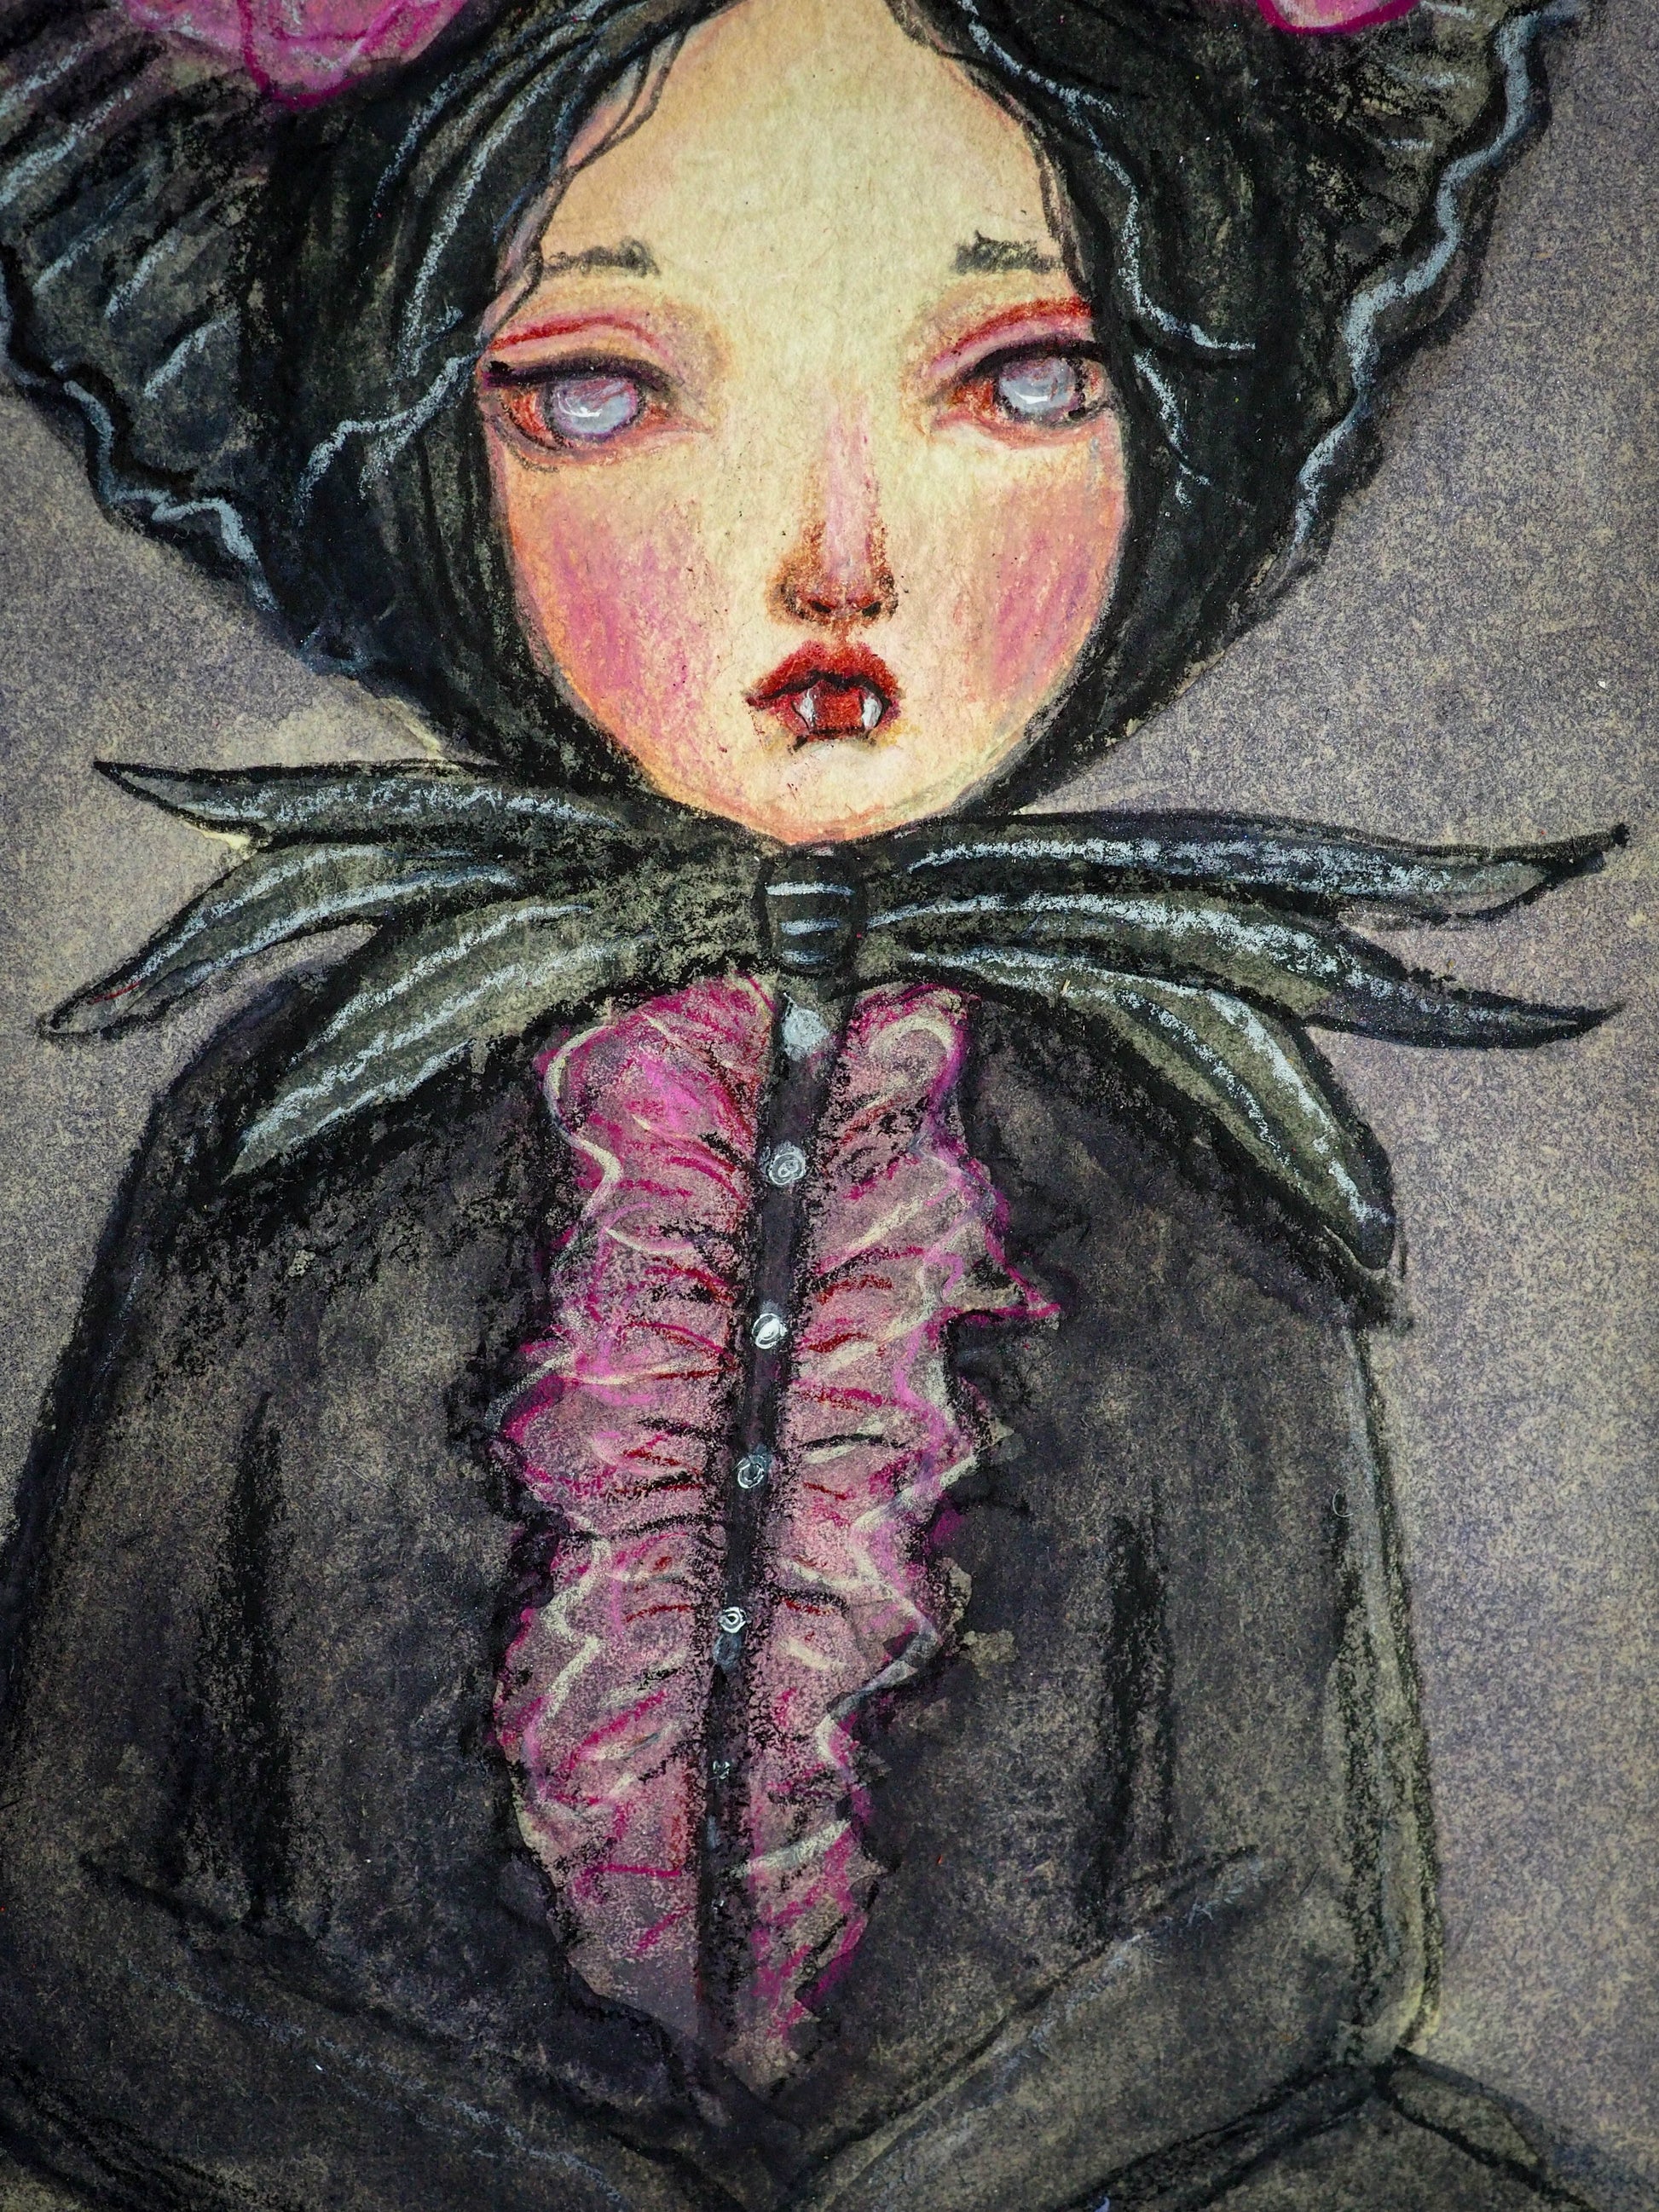 MINA THE VAMPIRE - An original watercolor painting on vintage book cover by Danita Art, Original Art by Danita Art